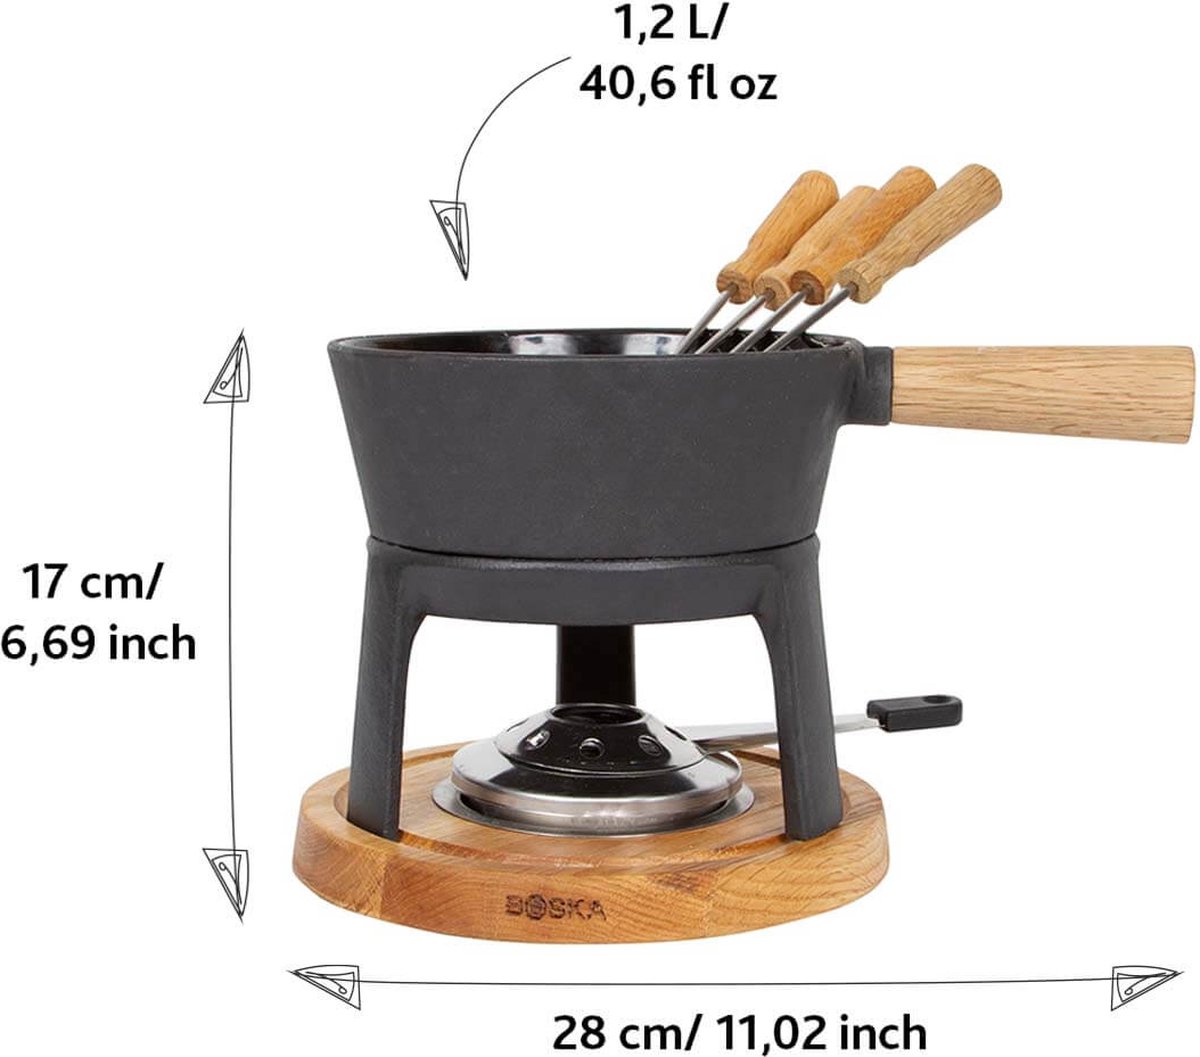 Illustreren Verminderen waarschijnlijkheid Boska Fondueset Pro - Kaas fondue - voor Iedere Kookplaat - 1,2 L | bol.com